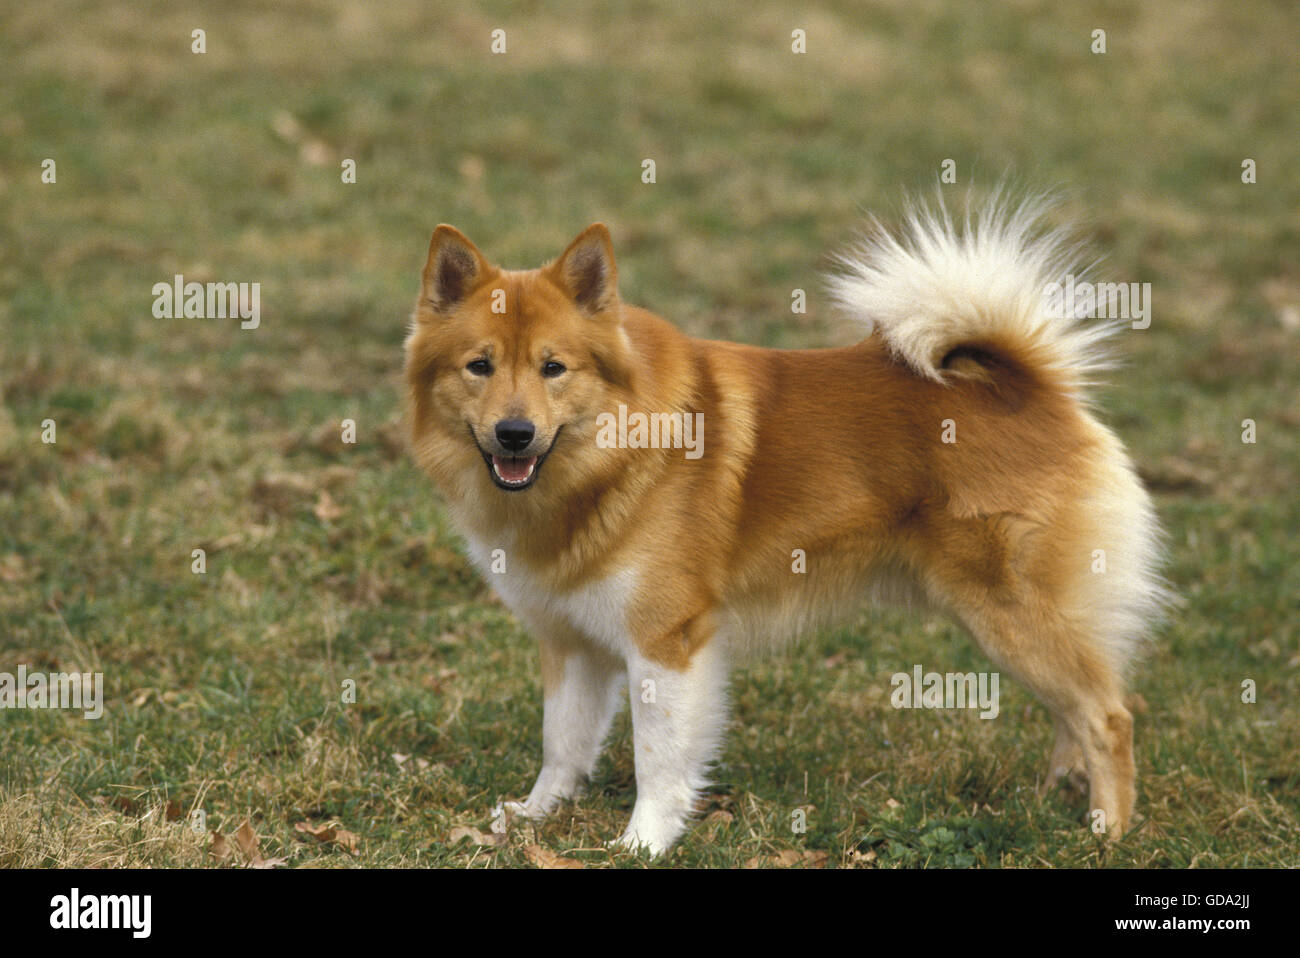 Islandhund oder Islandhund auf Rasen Stockfoto